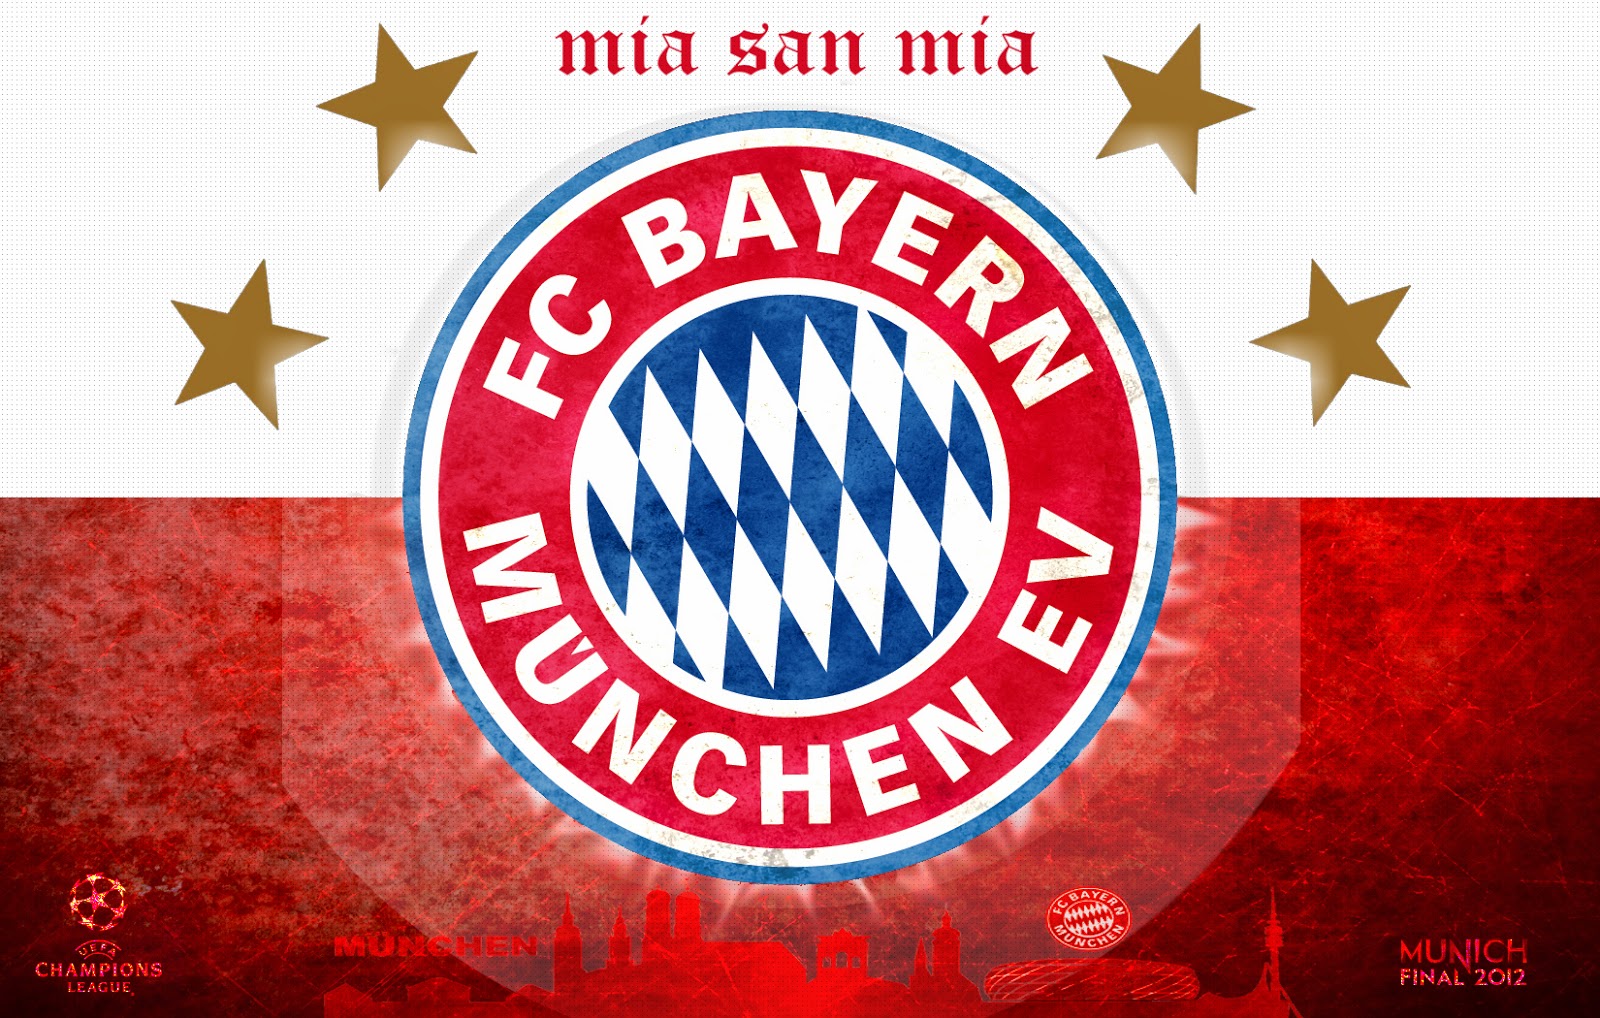 The Fresh Wallpaper Bayern Munchen Football Club Wallpaper